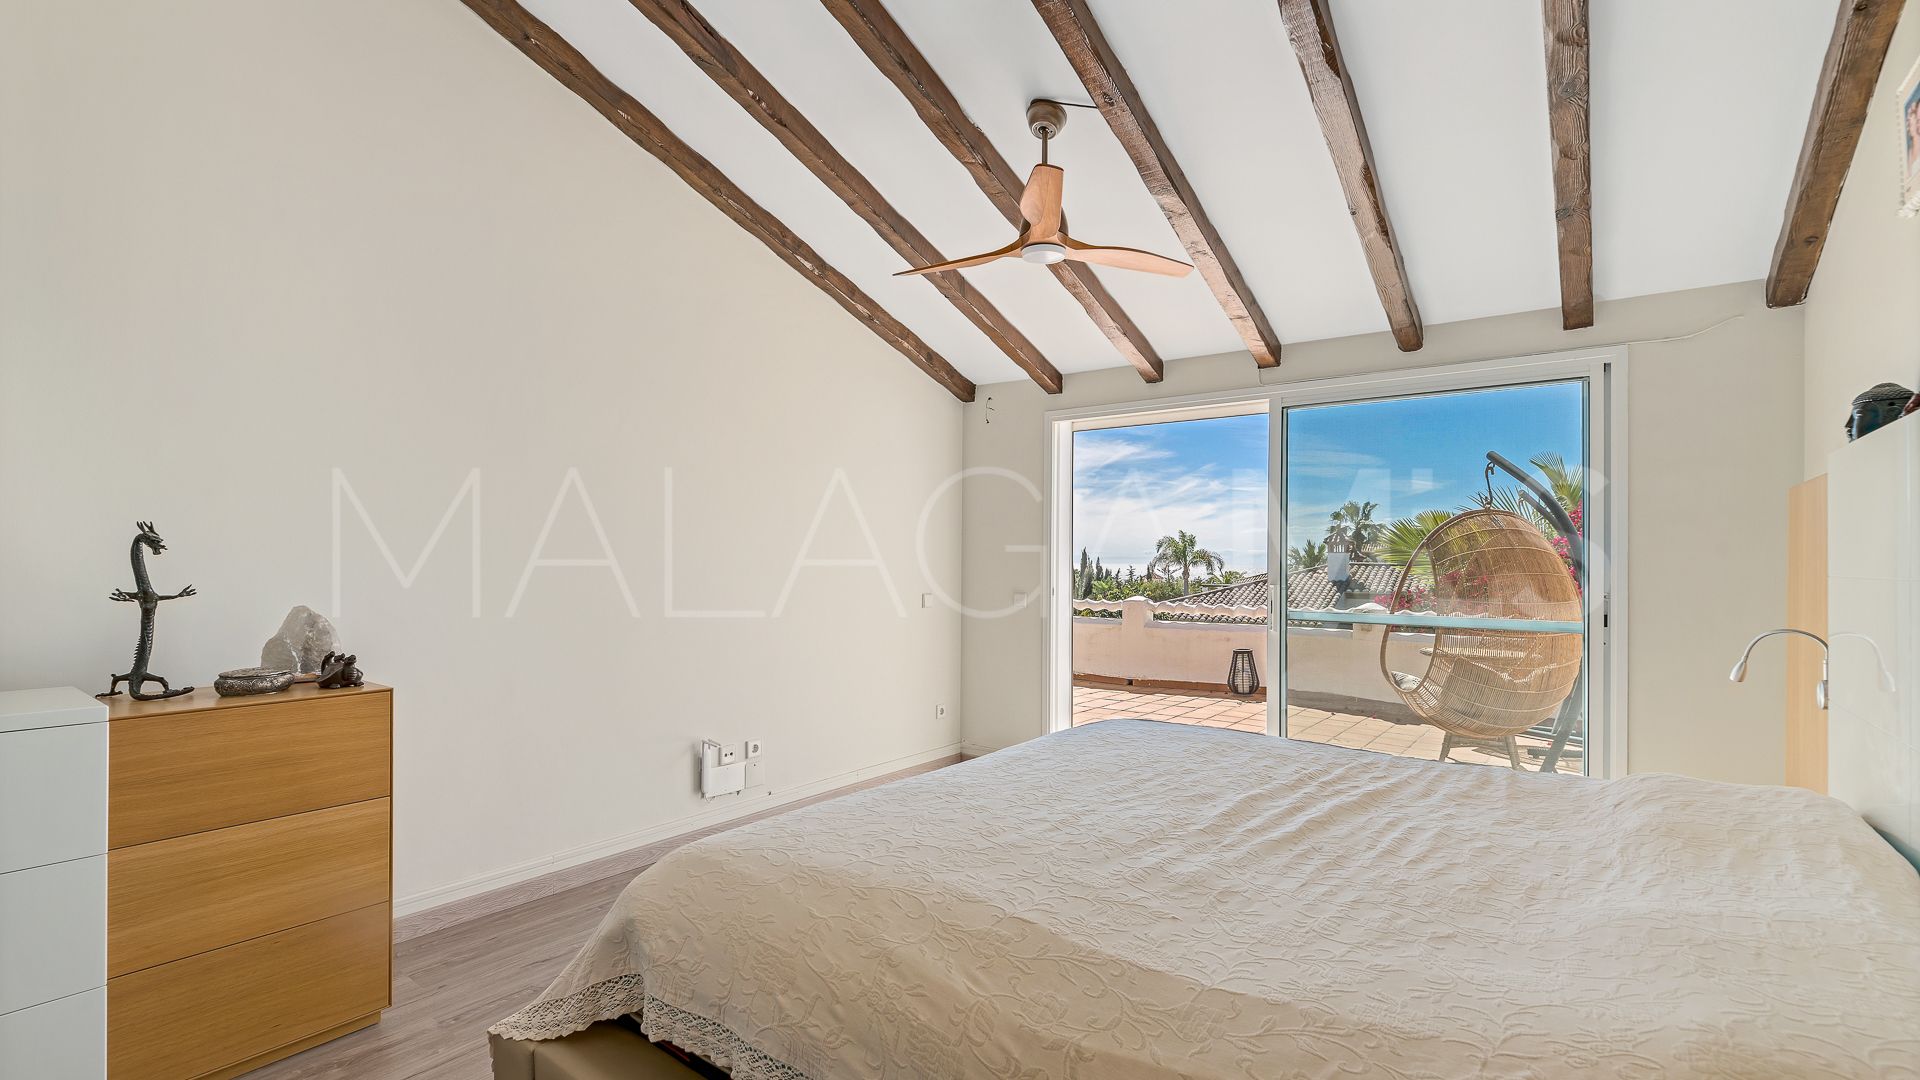 Adosado for sale with 3 bedrooms in Bahia de Marbella